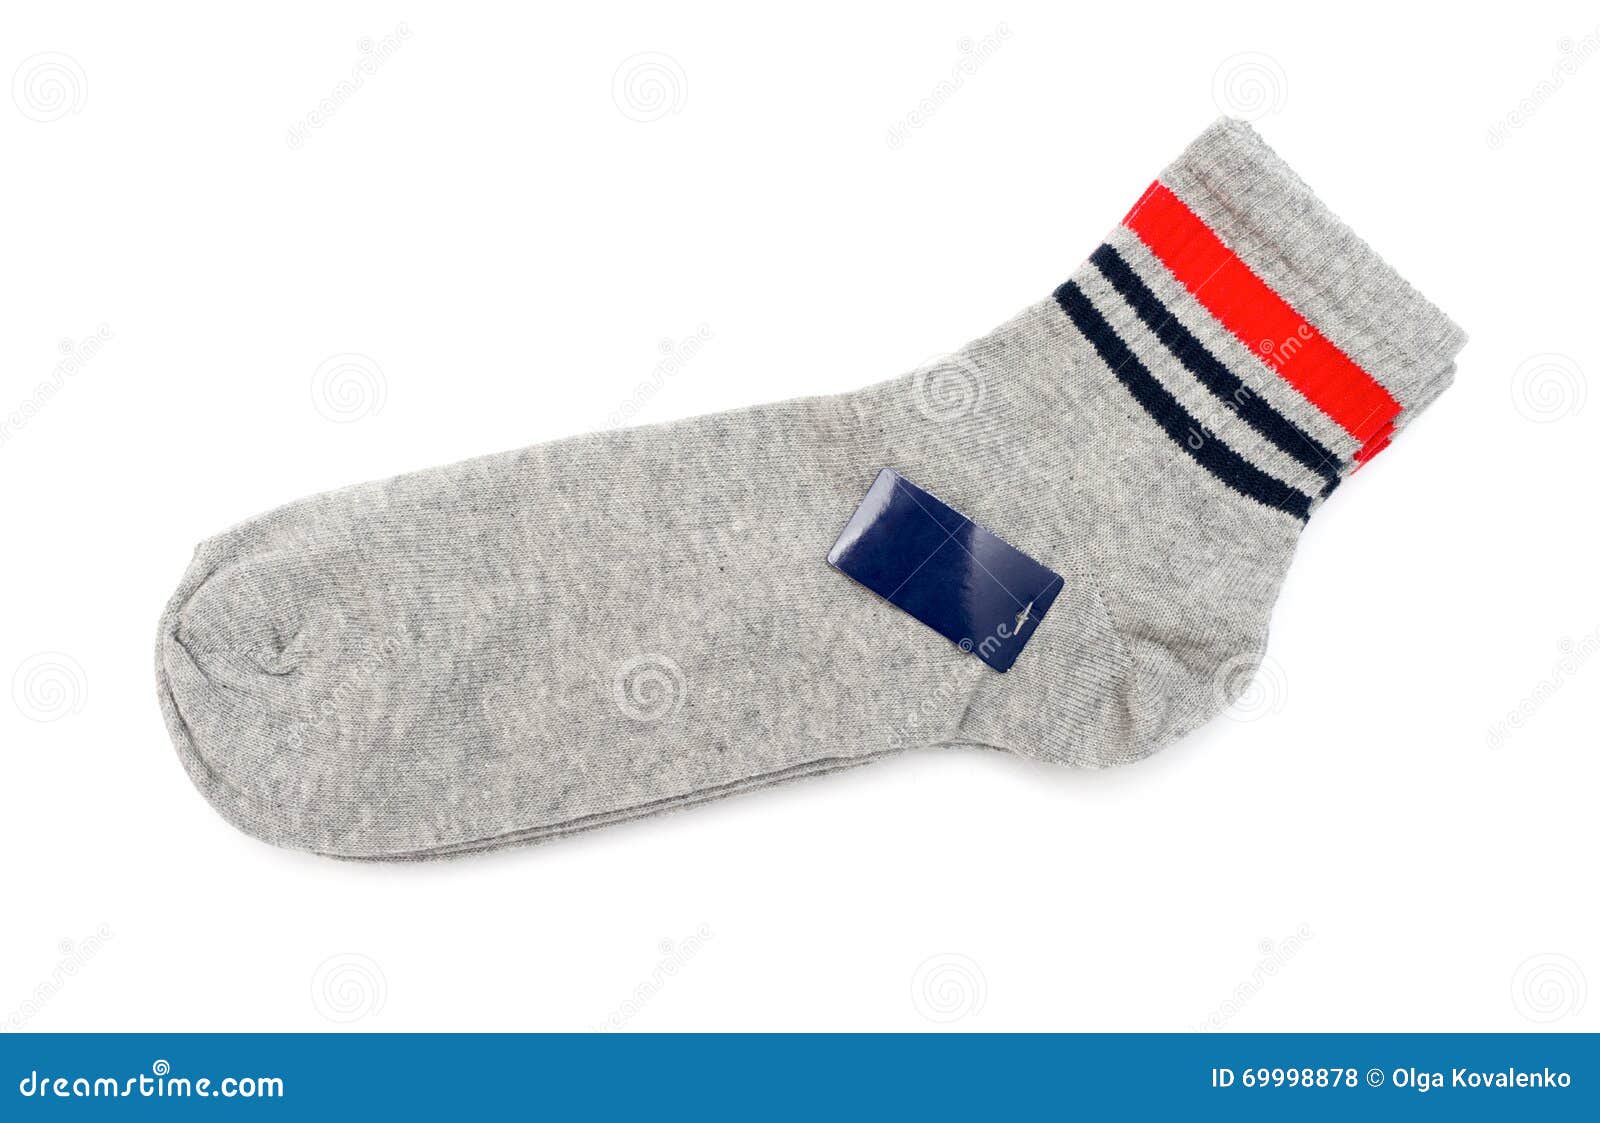 Socks isolated on white stock photo. Image of short, grey - 69998878